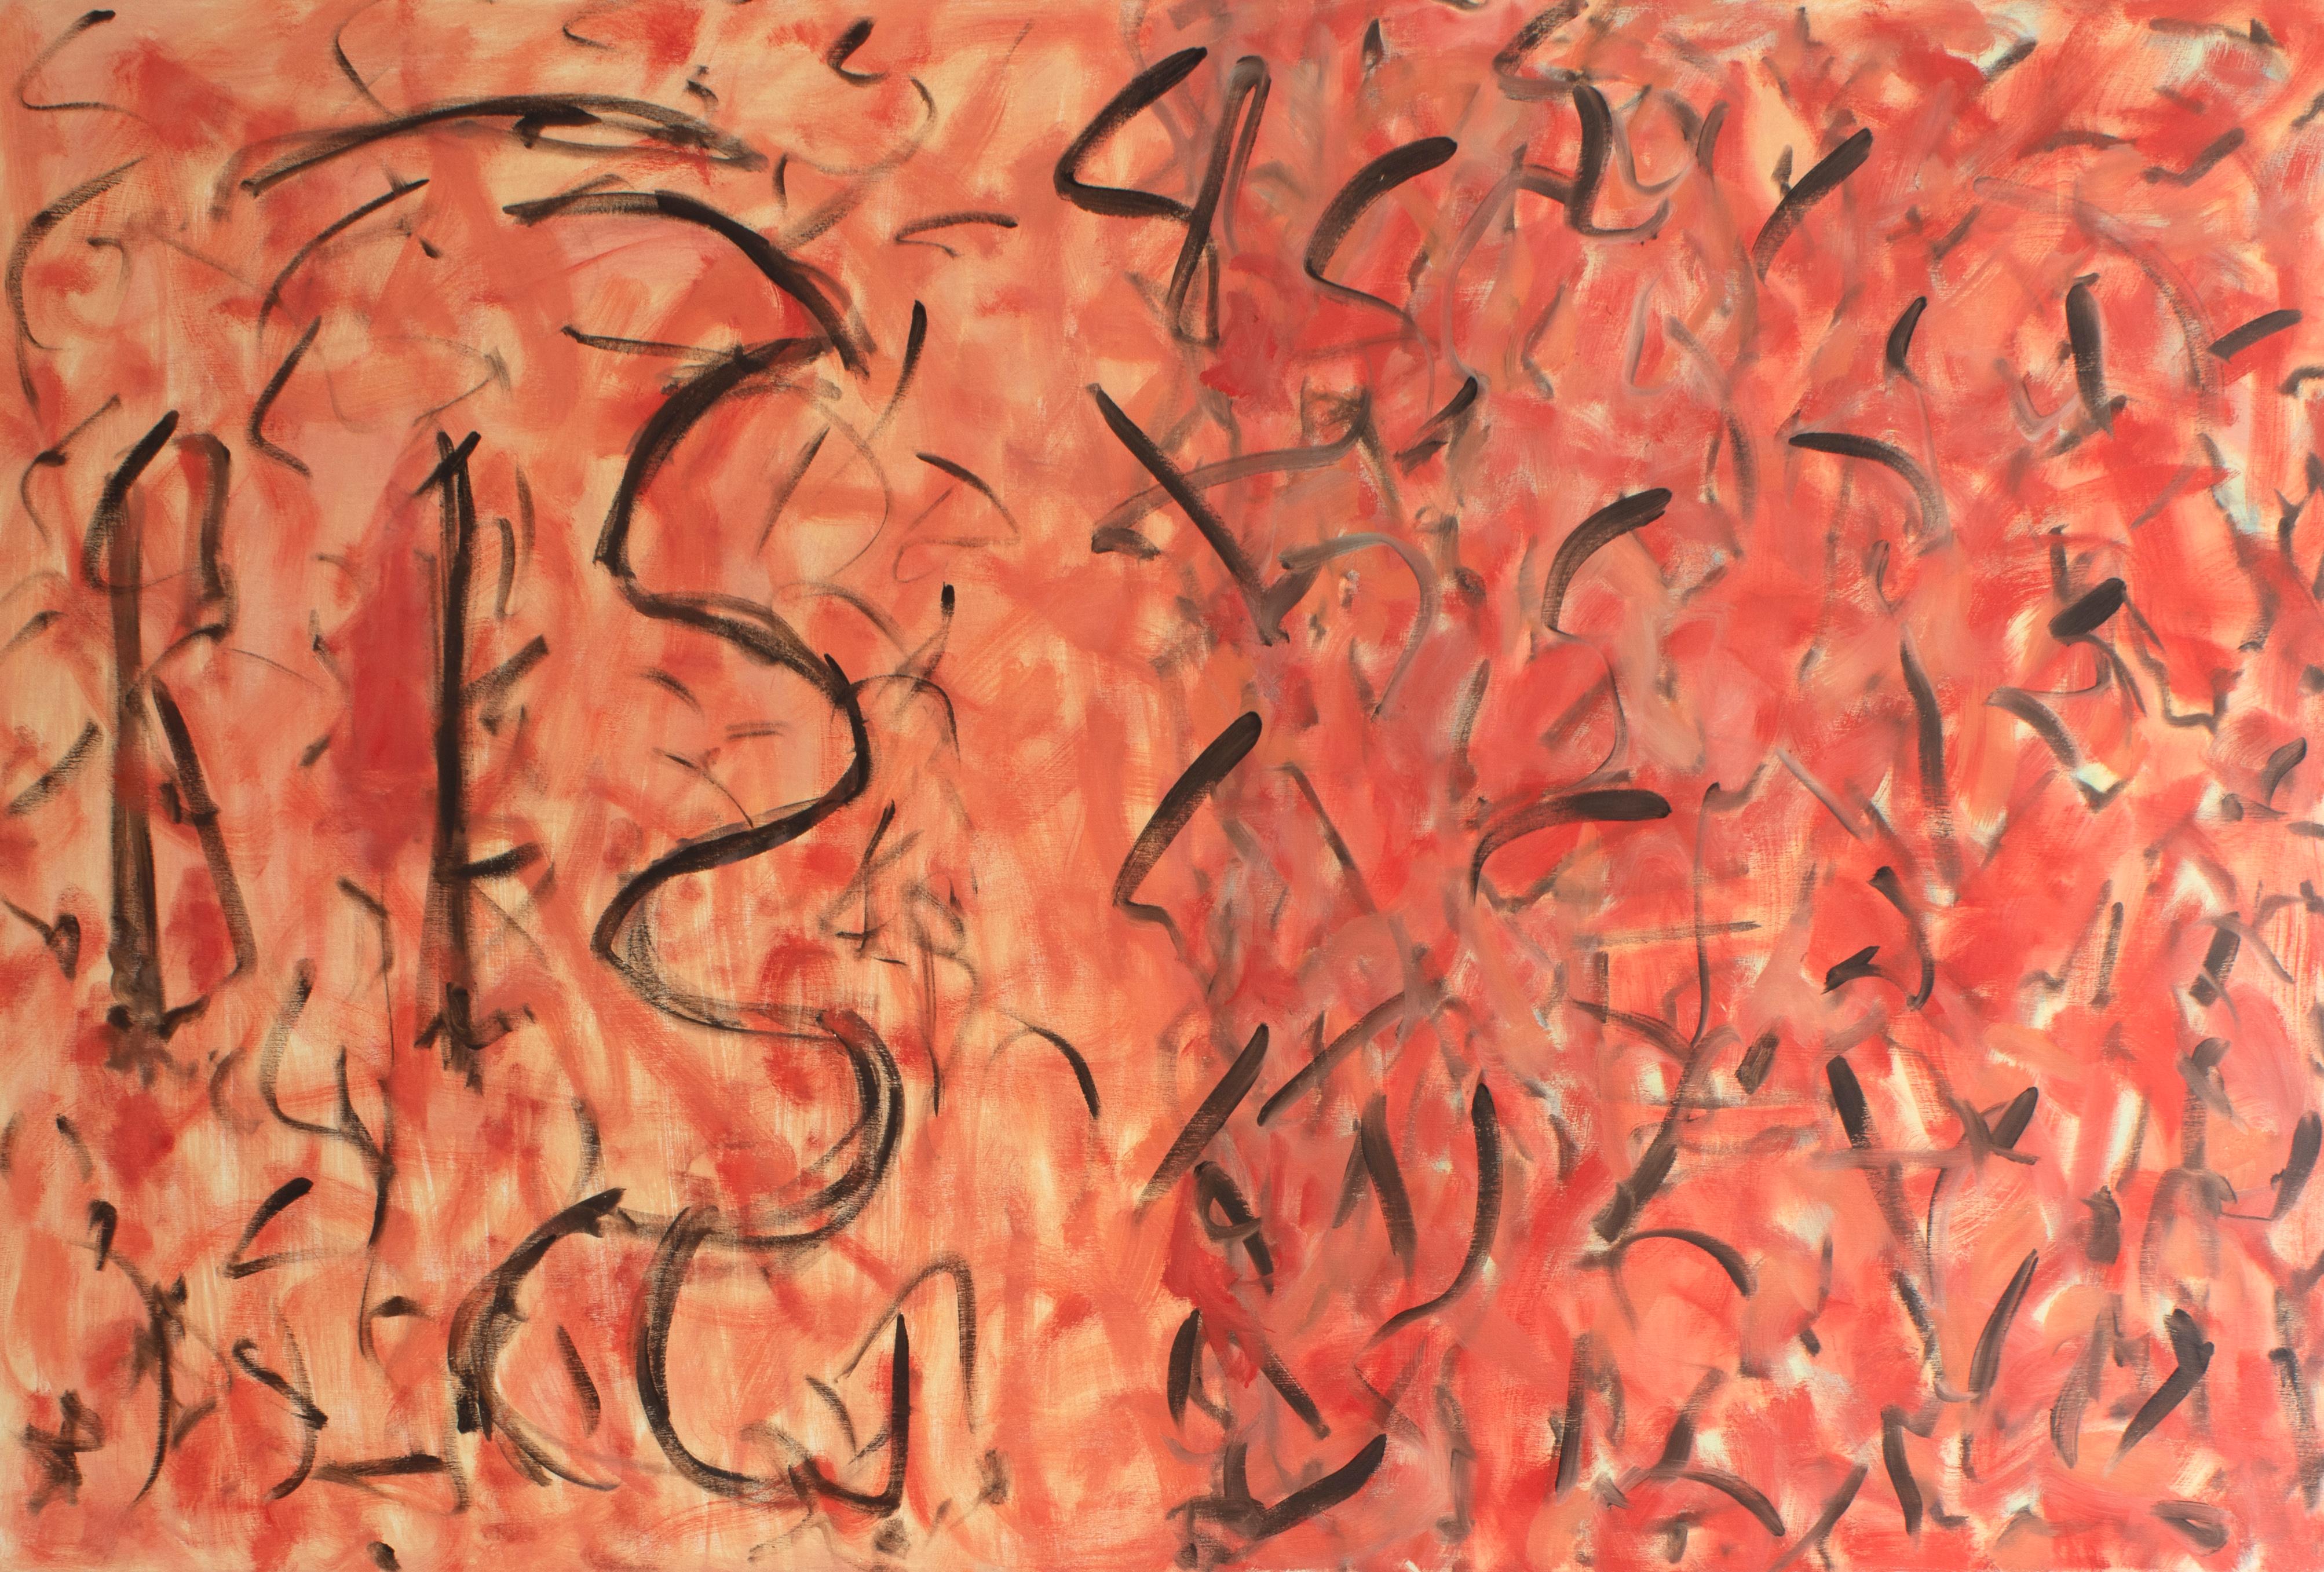 George McClancy (1930-2014) Abstrakte Mustermalerei. 
Acryl auf Leinwand 
48 "H x 72 "W

George McClancy erwarb einen MA in Malerei an der Katholischen Universität in Washington DC, wo er Schüler von Kenneth Noland war. George McClancy gehörte zu